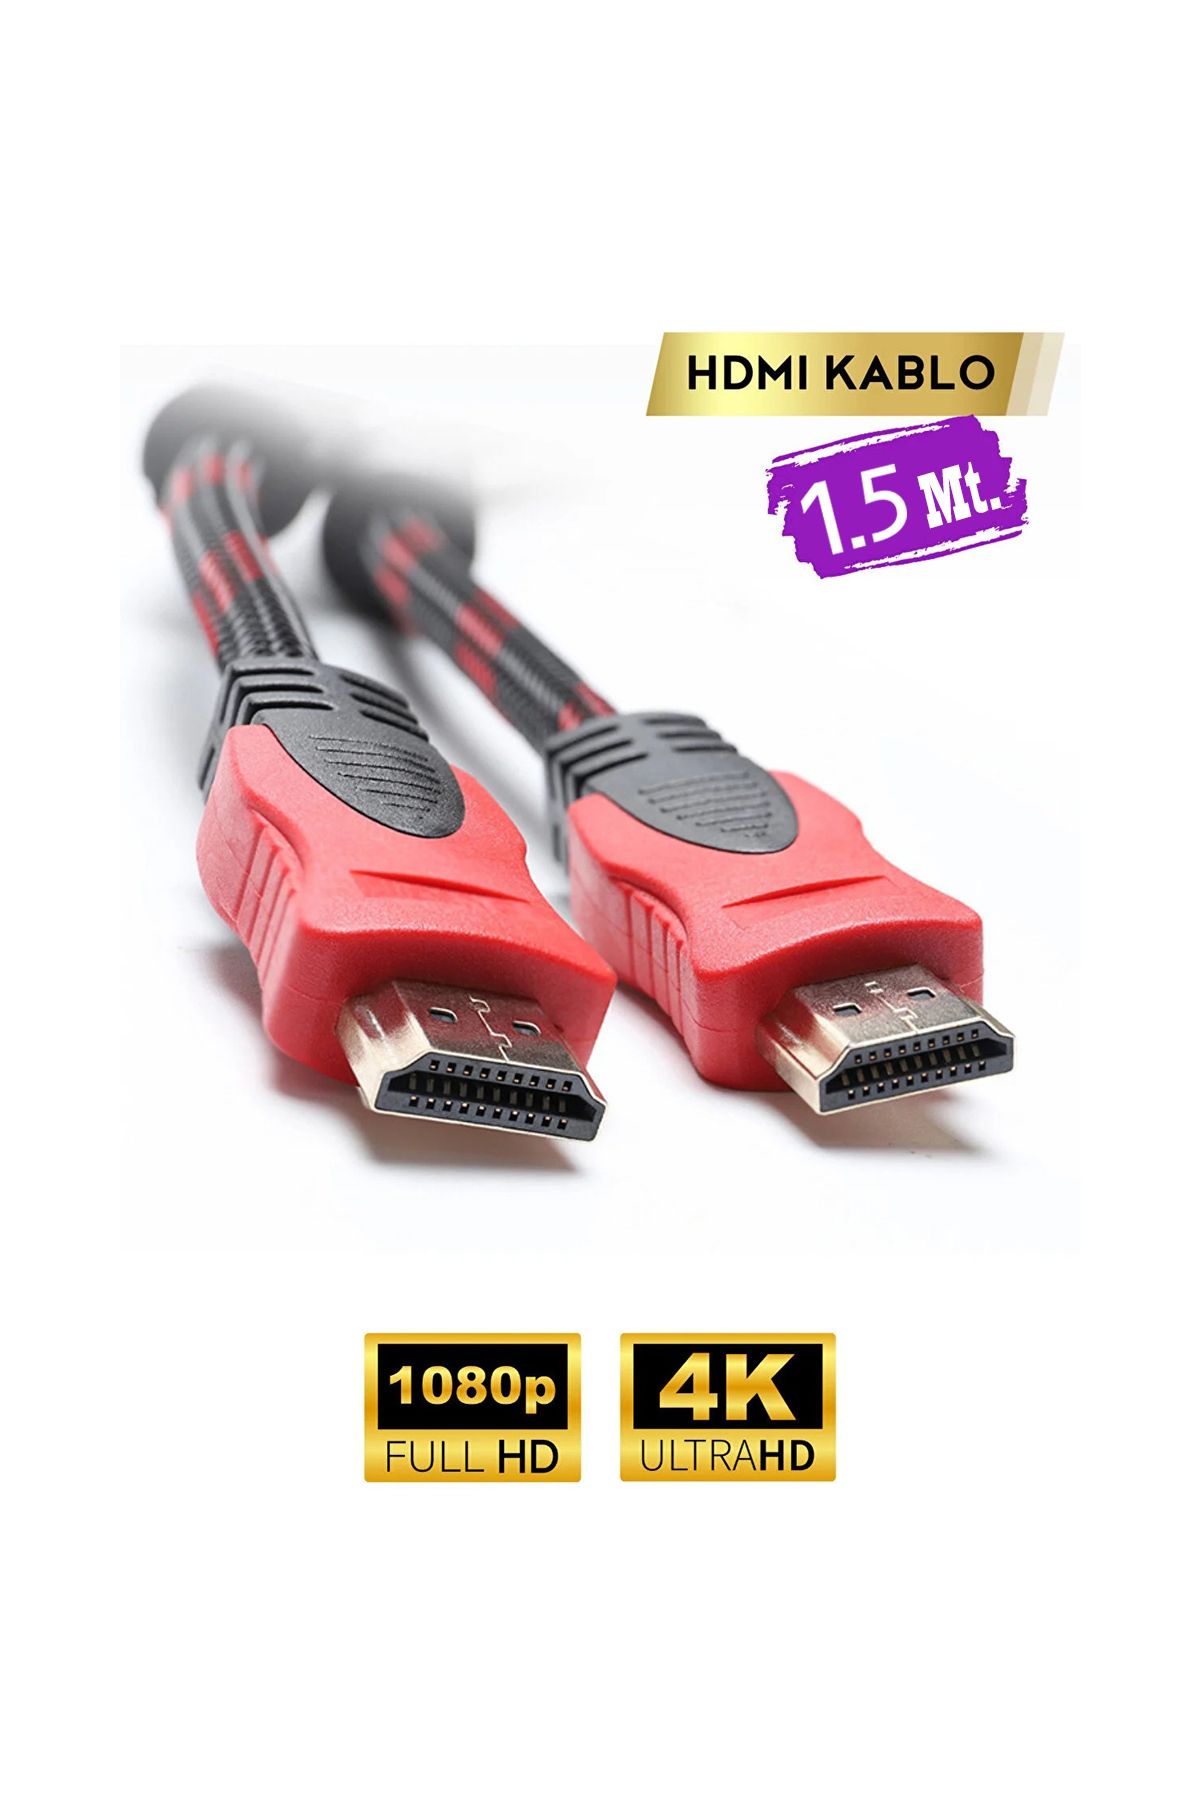 ALTUNTEKNOMAX Altın Uçlu Hasır Örgülü Full HD TV Monitör Uydu Alıcısı PC Uyumlu HDMI Kablosu 1.5 mt